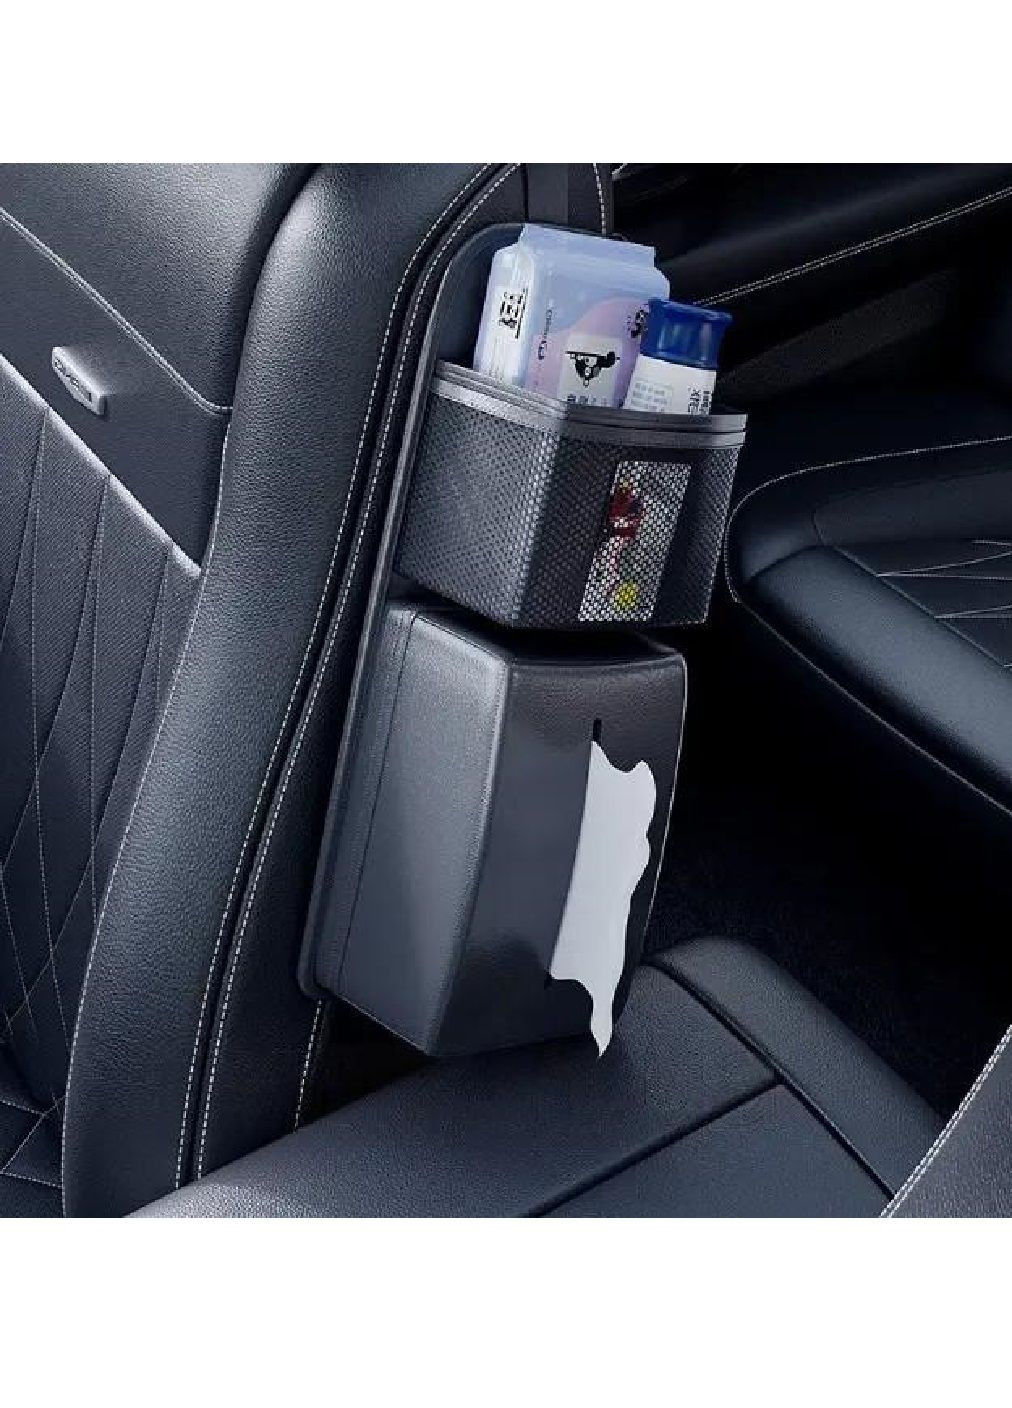 Органайзер короб салфетница на боковую часть переднего сидения в машину автомобиль 38х14.5х8 см (477038-Prob) Черный Unbranded (293814599)